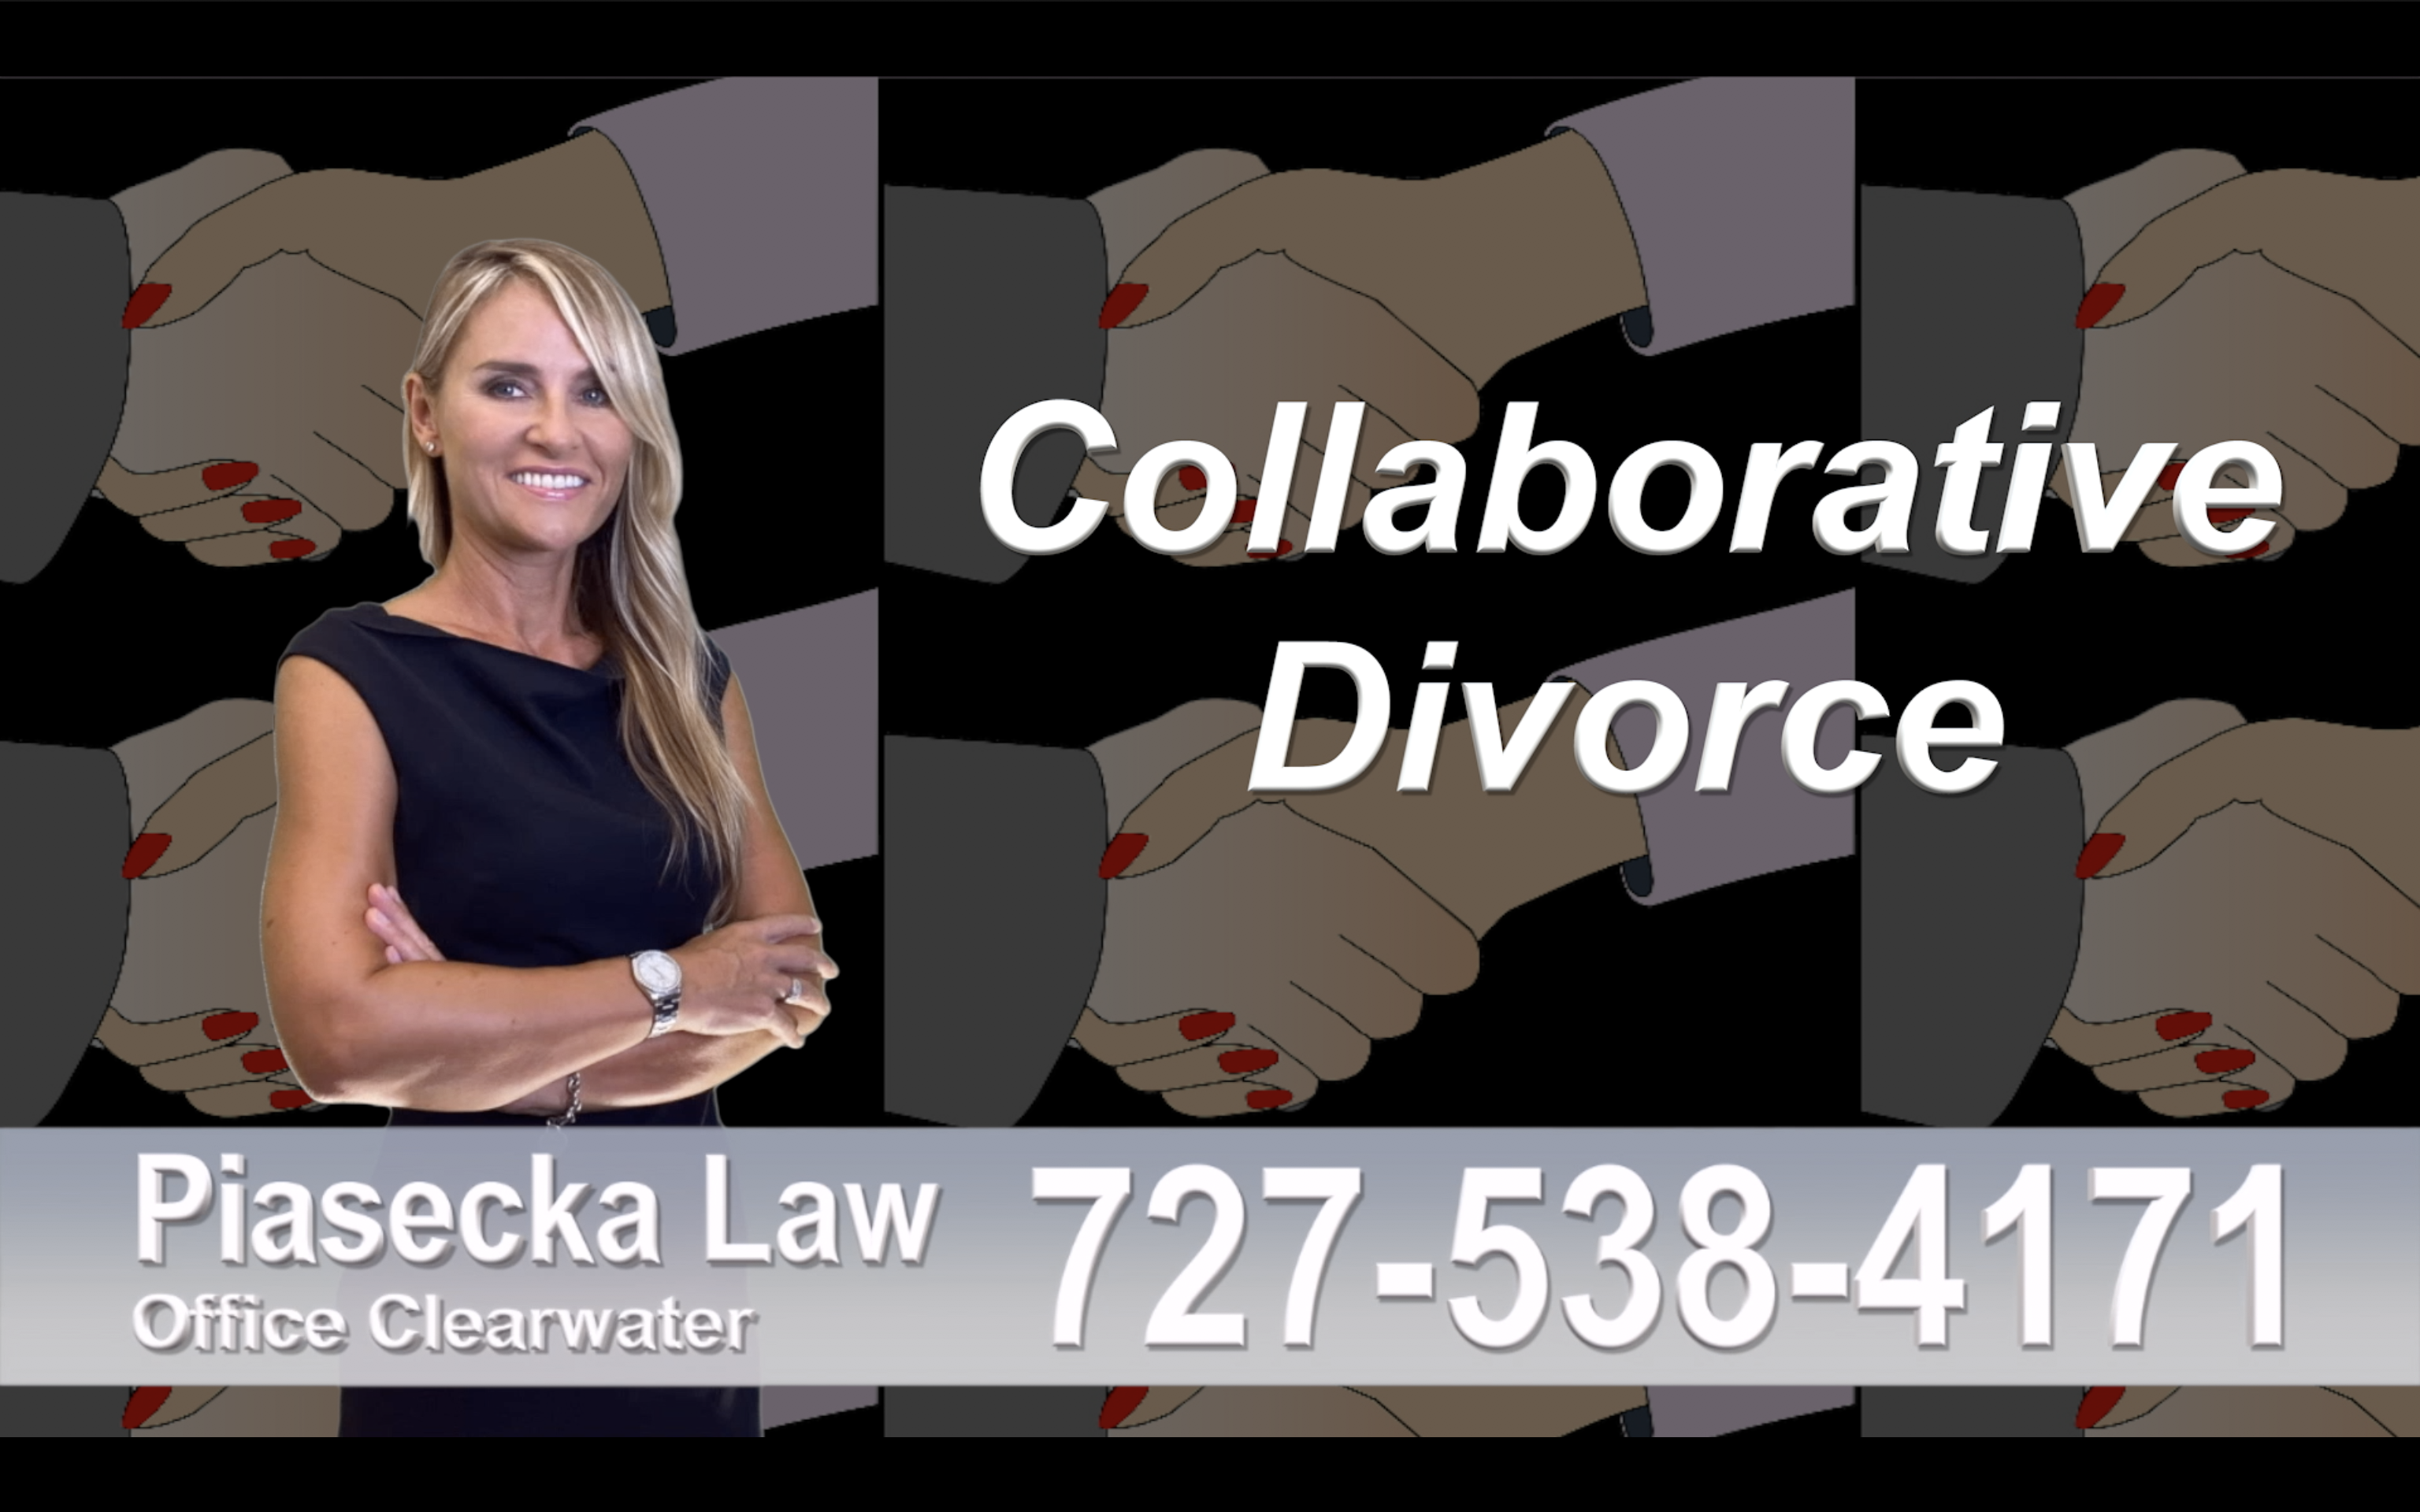 Palm Beach Collaborative, Divorce, Attorney, Agnieszka, Piasecka, Prawnik, Rozwodowy, Rozwód, Adwokat, Najlepszy, Best attorney, divorce